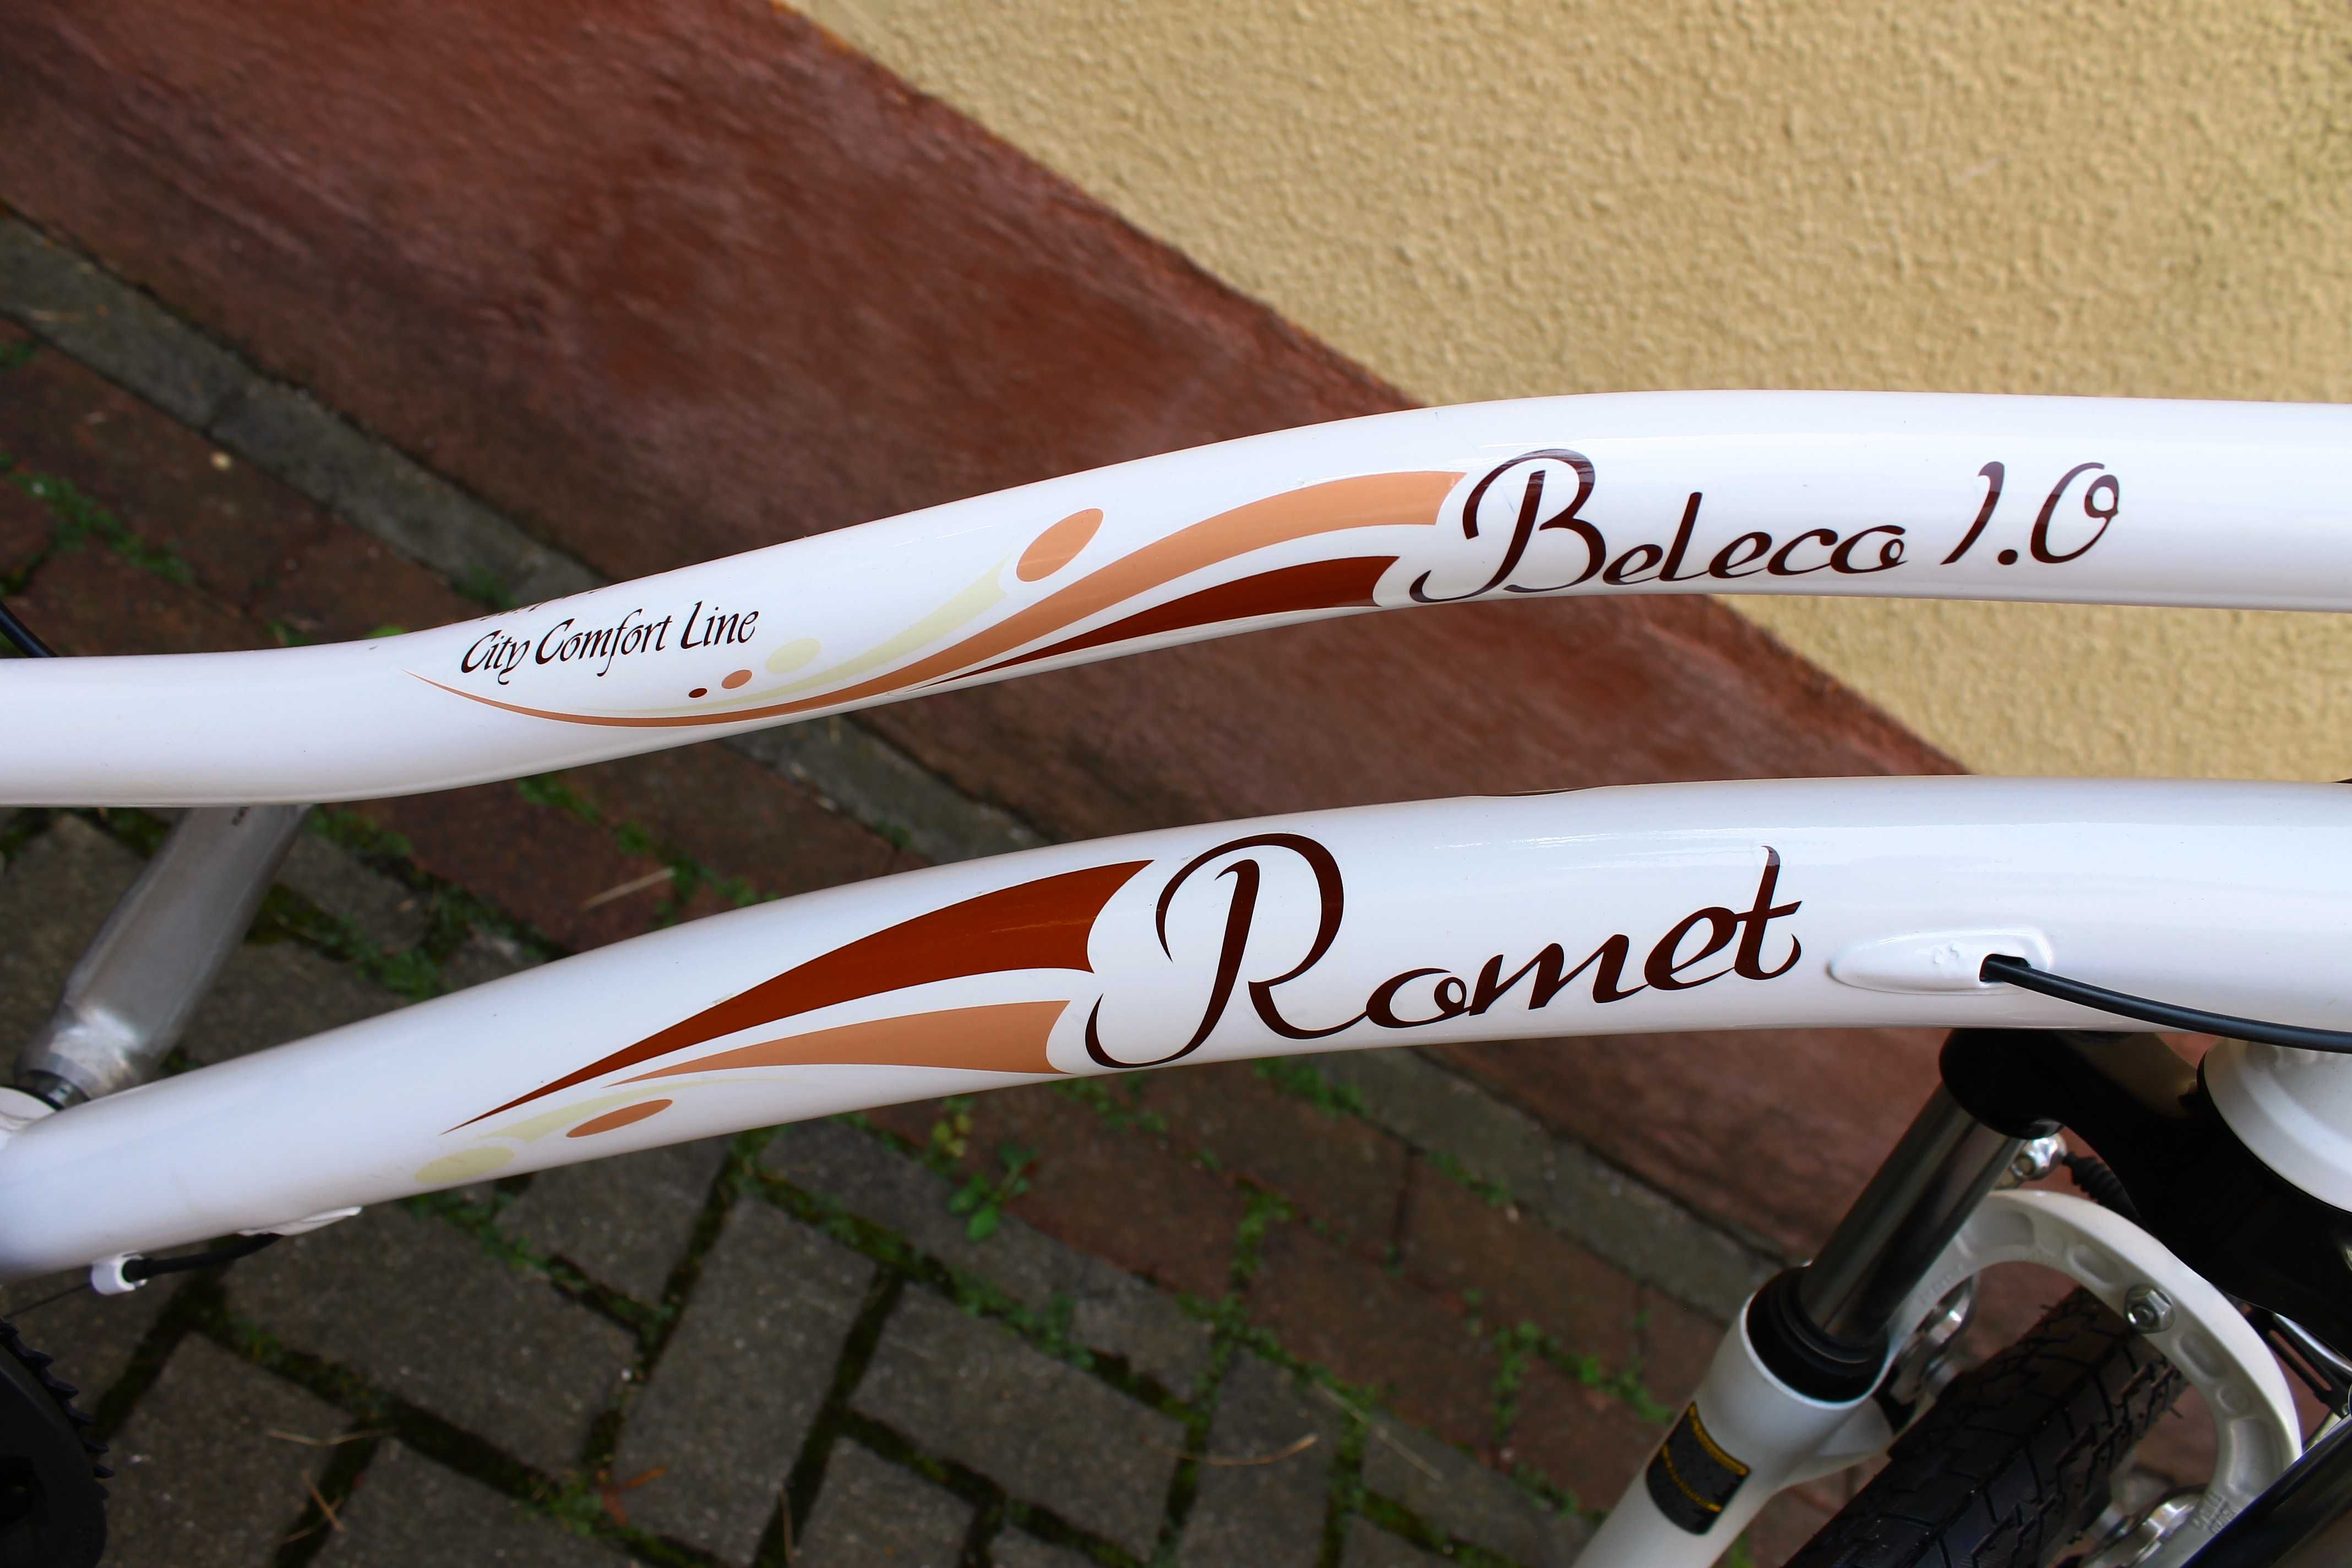 Rower Romet Belleco